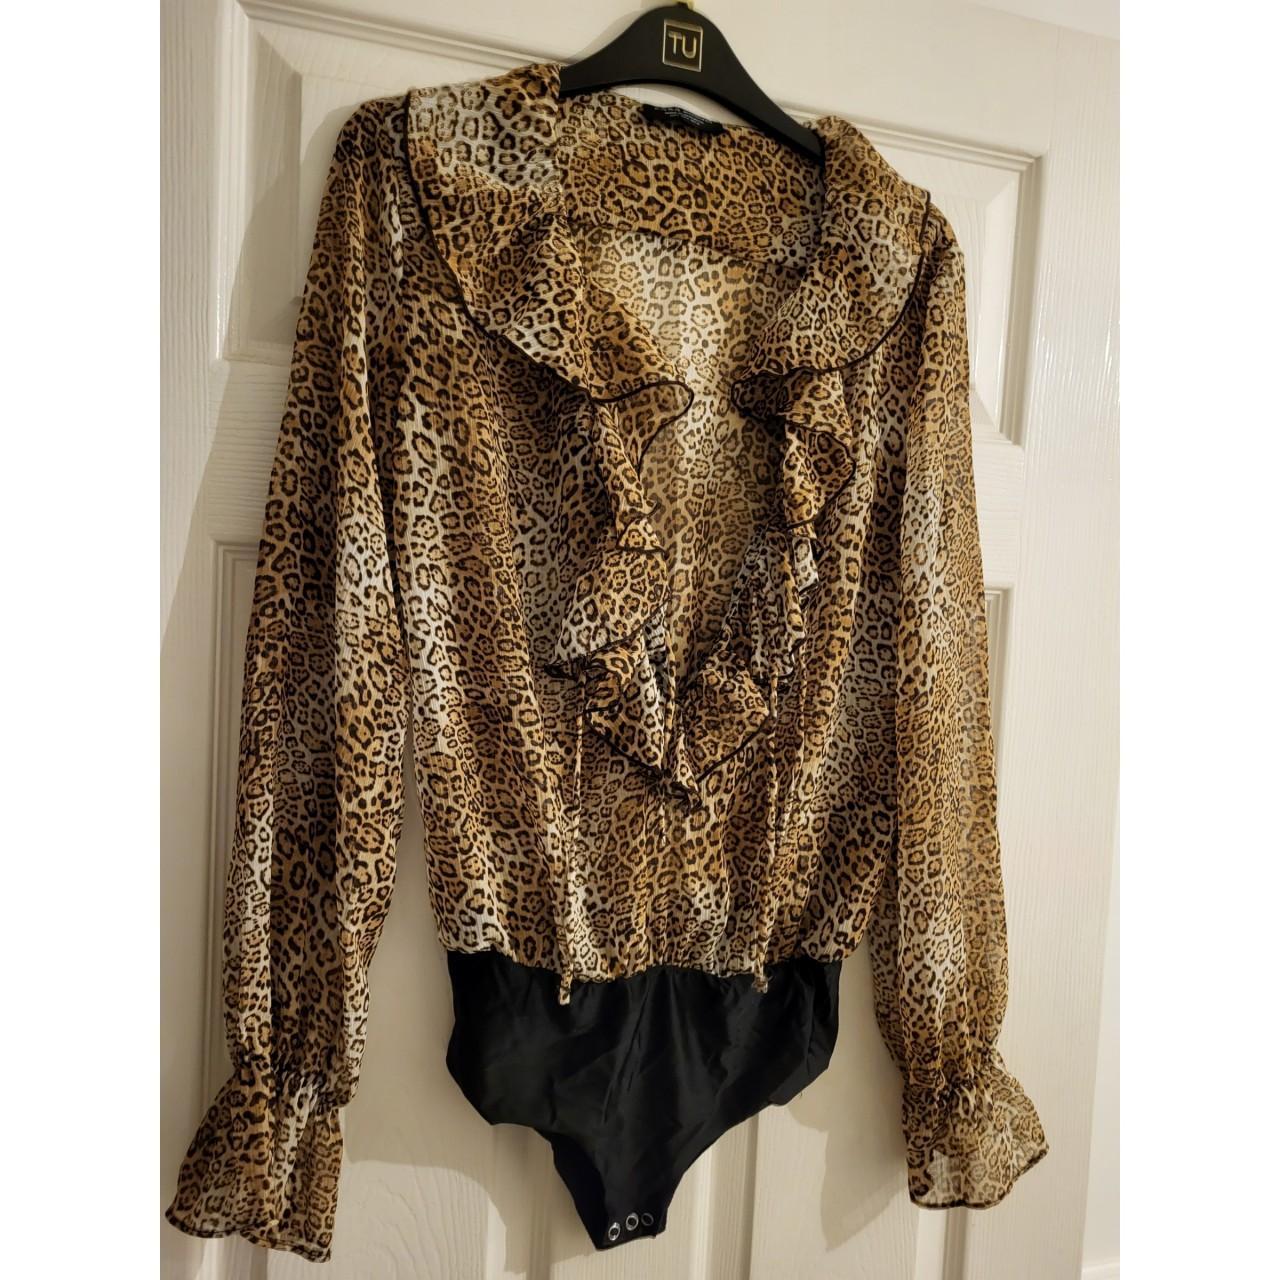 Sheer leopard print bodysuit from Zara. Low cut... - Depop